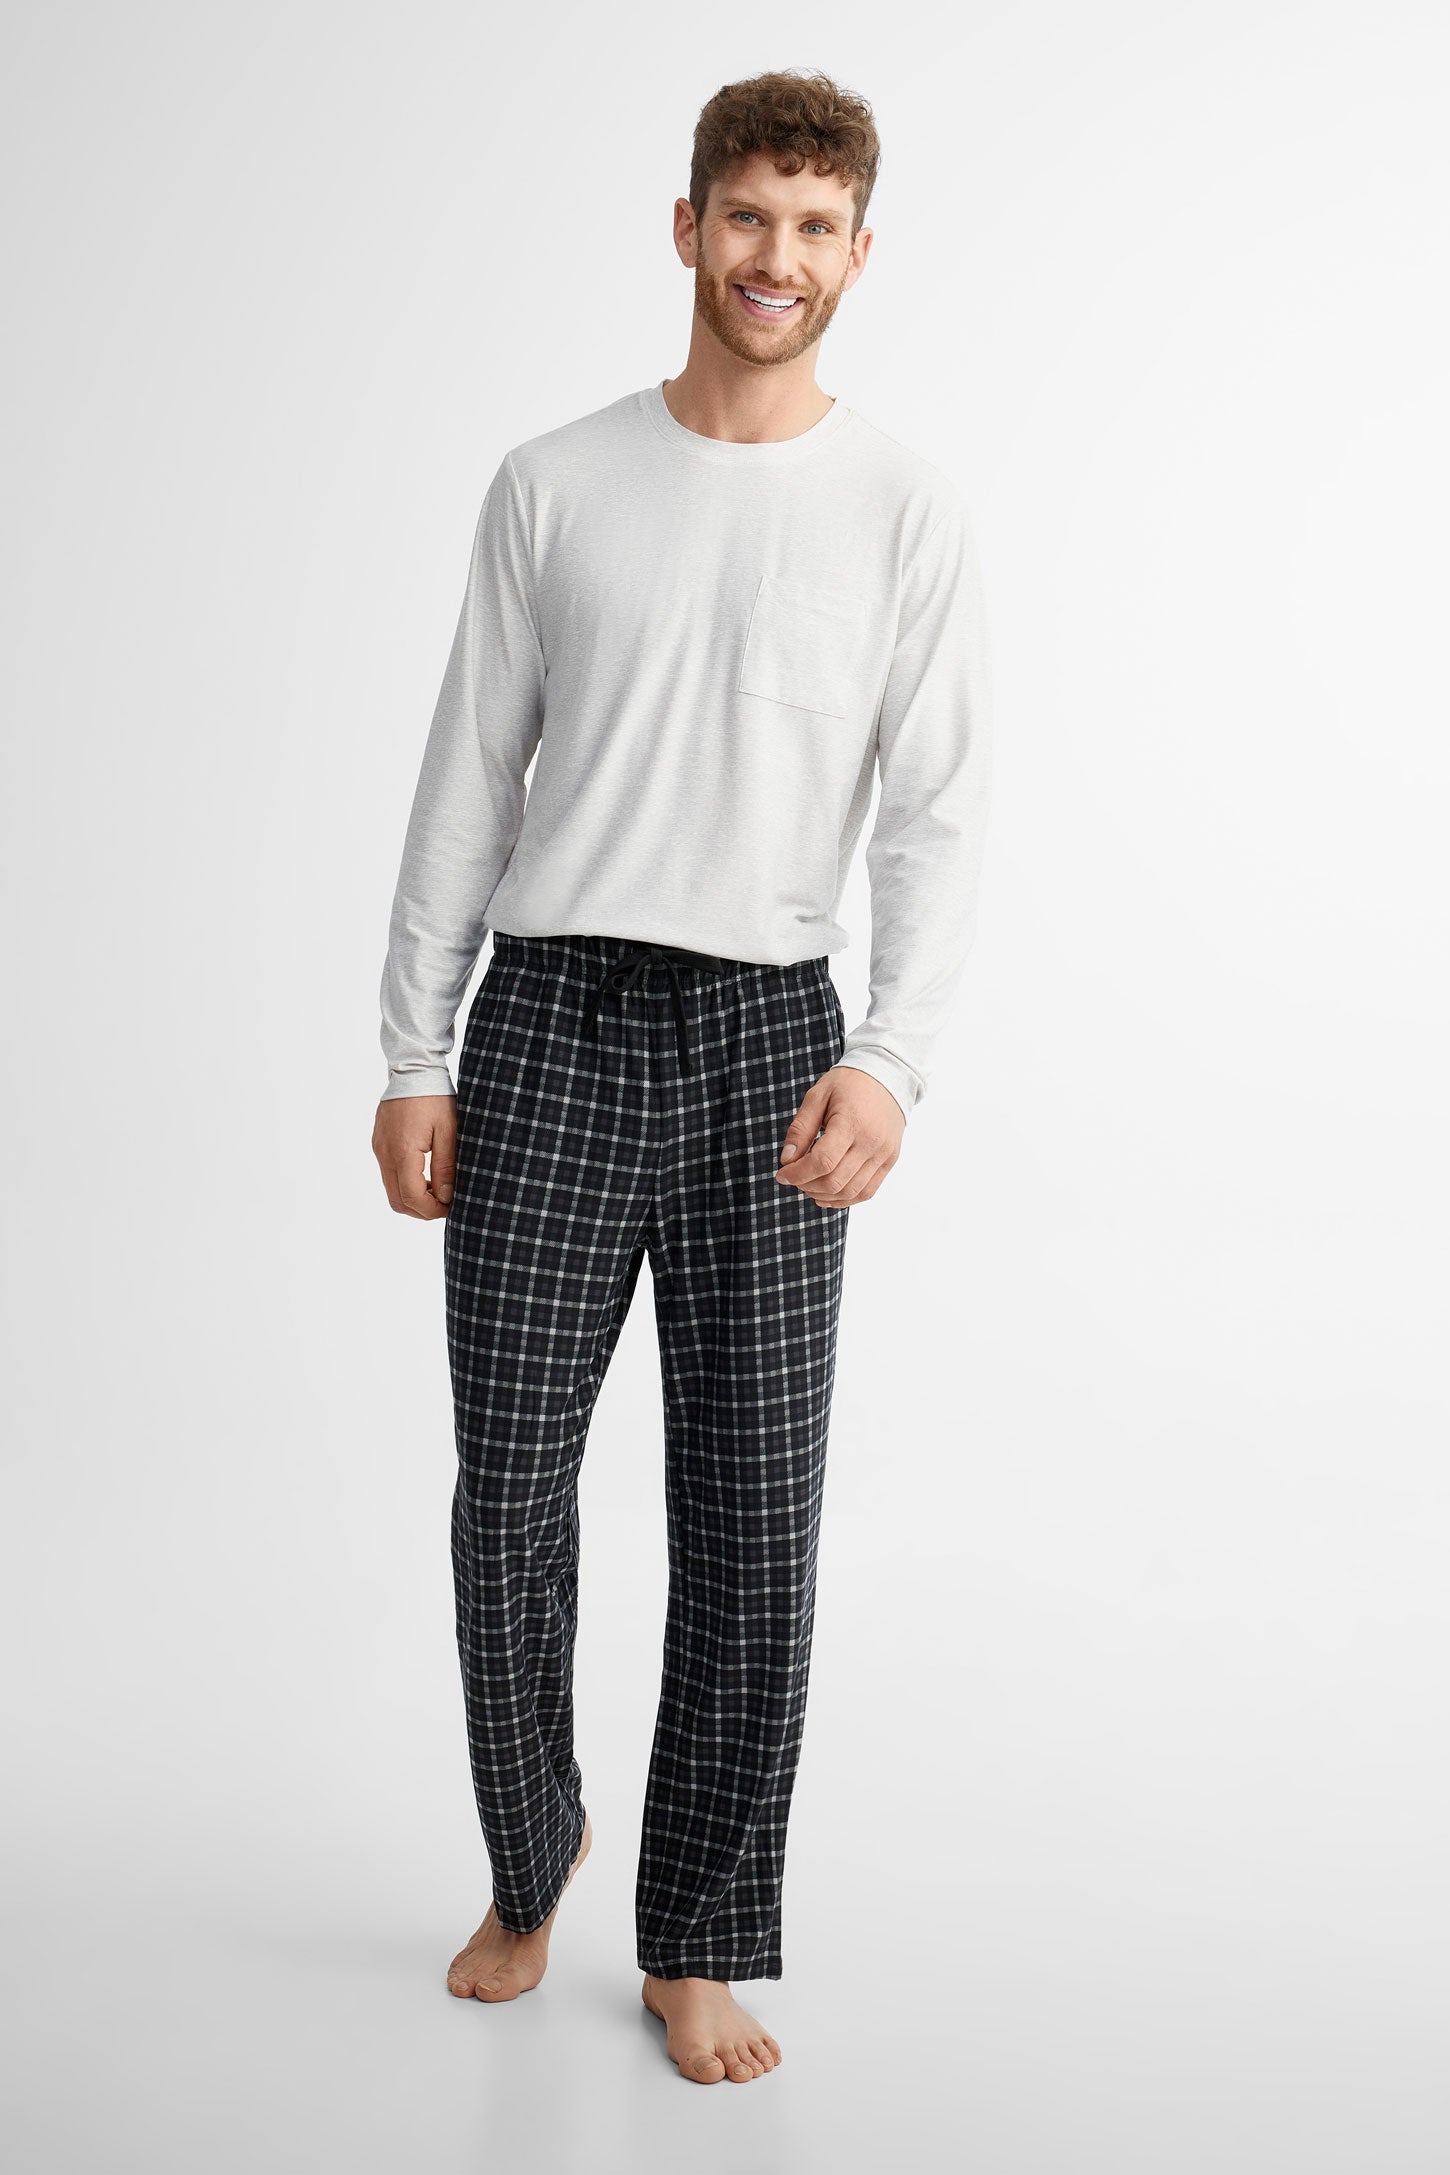 Duos futés, Pantalon pyjama en Moss, 2/40$ - Homme && GRIS MULTI